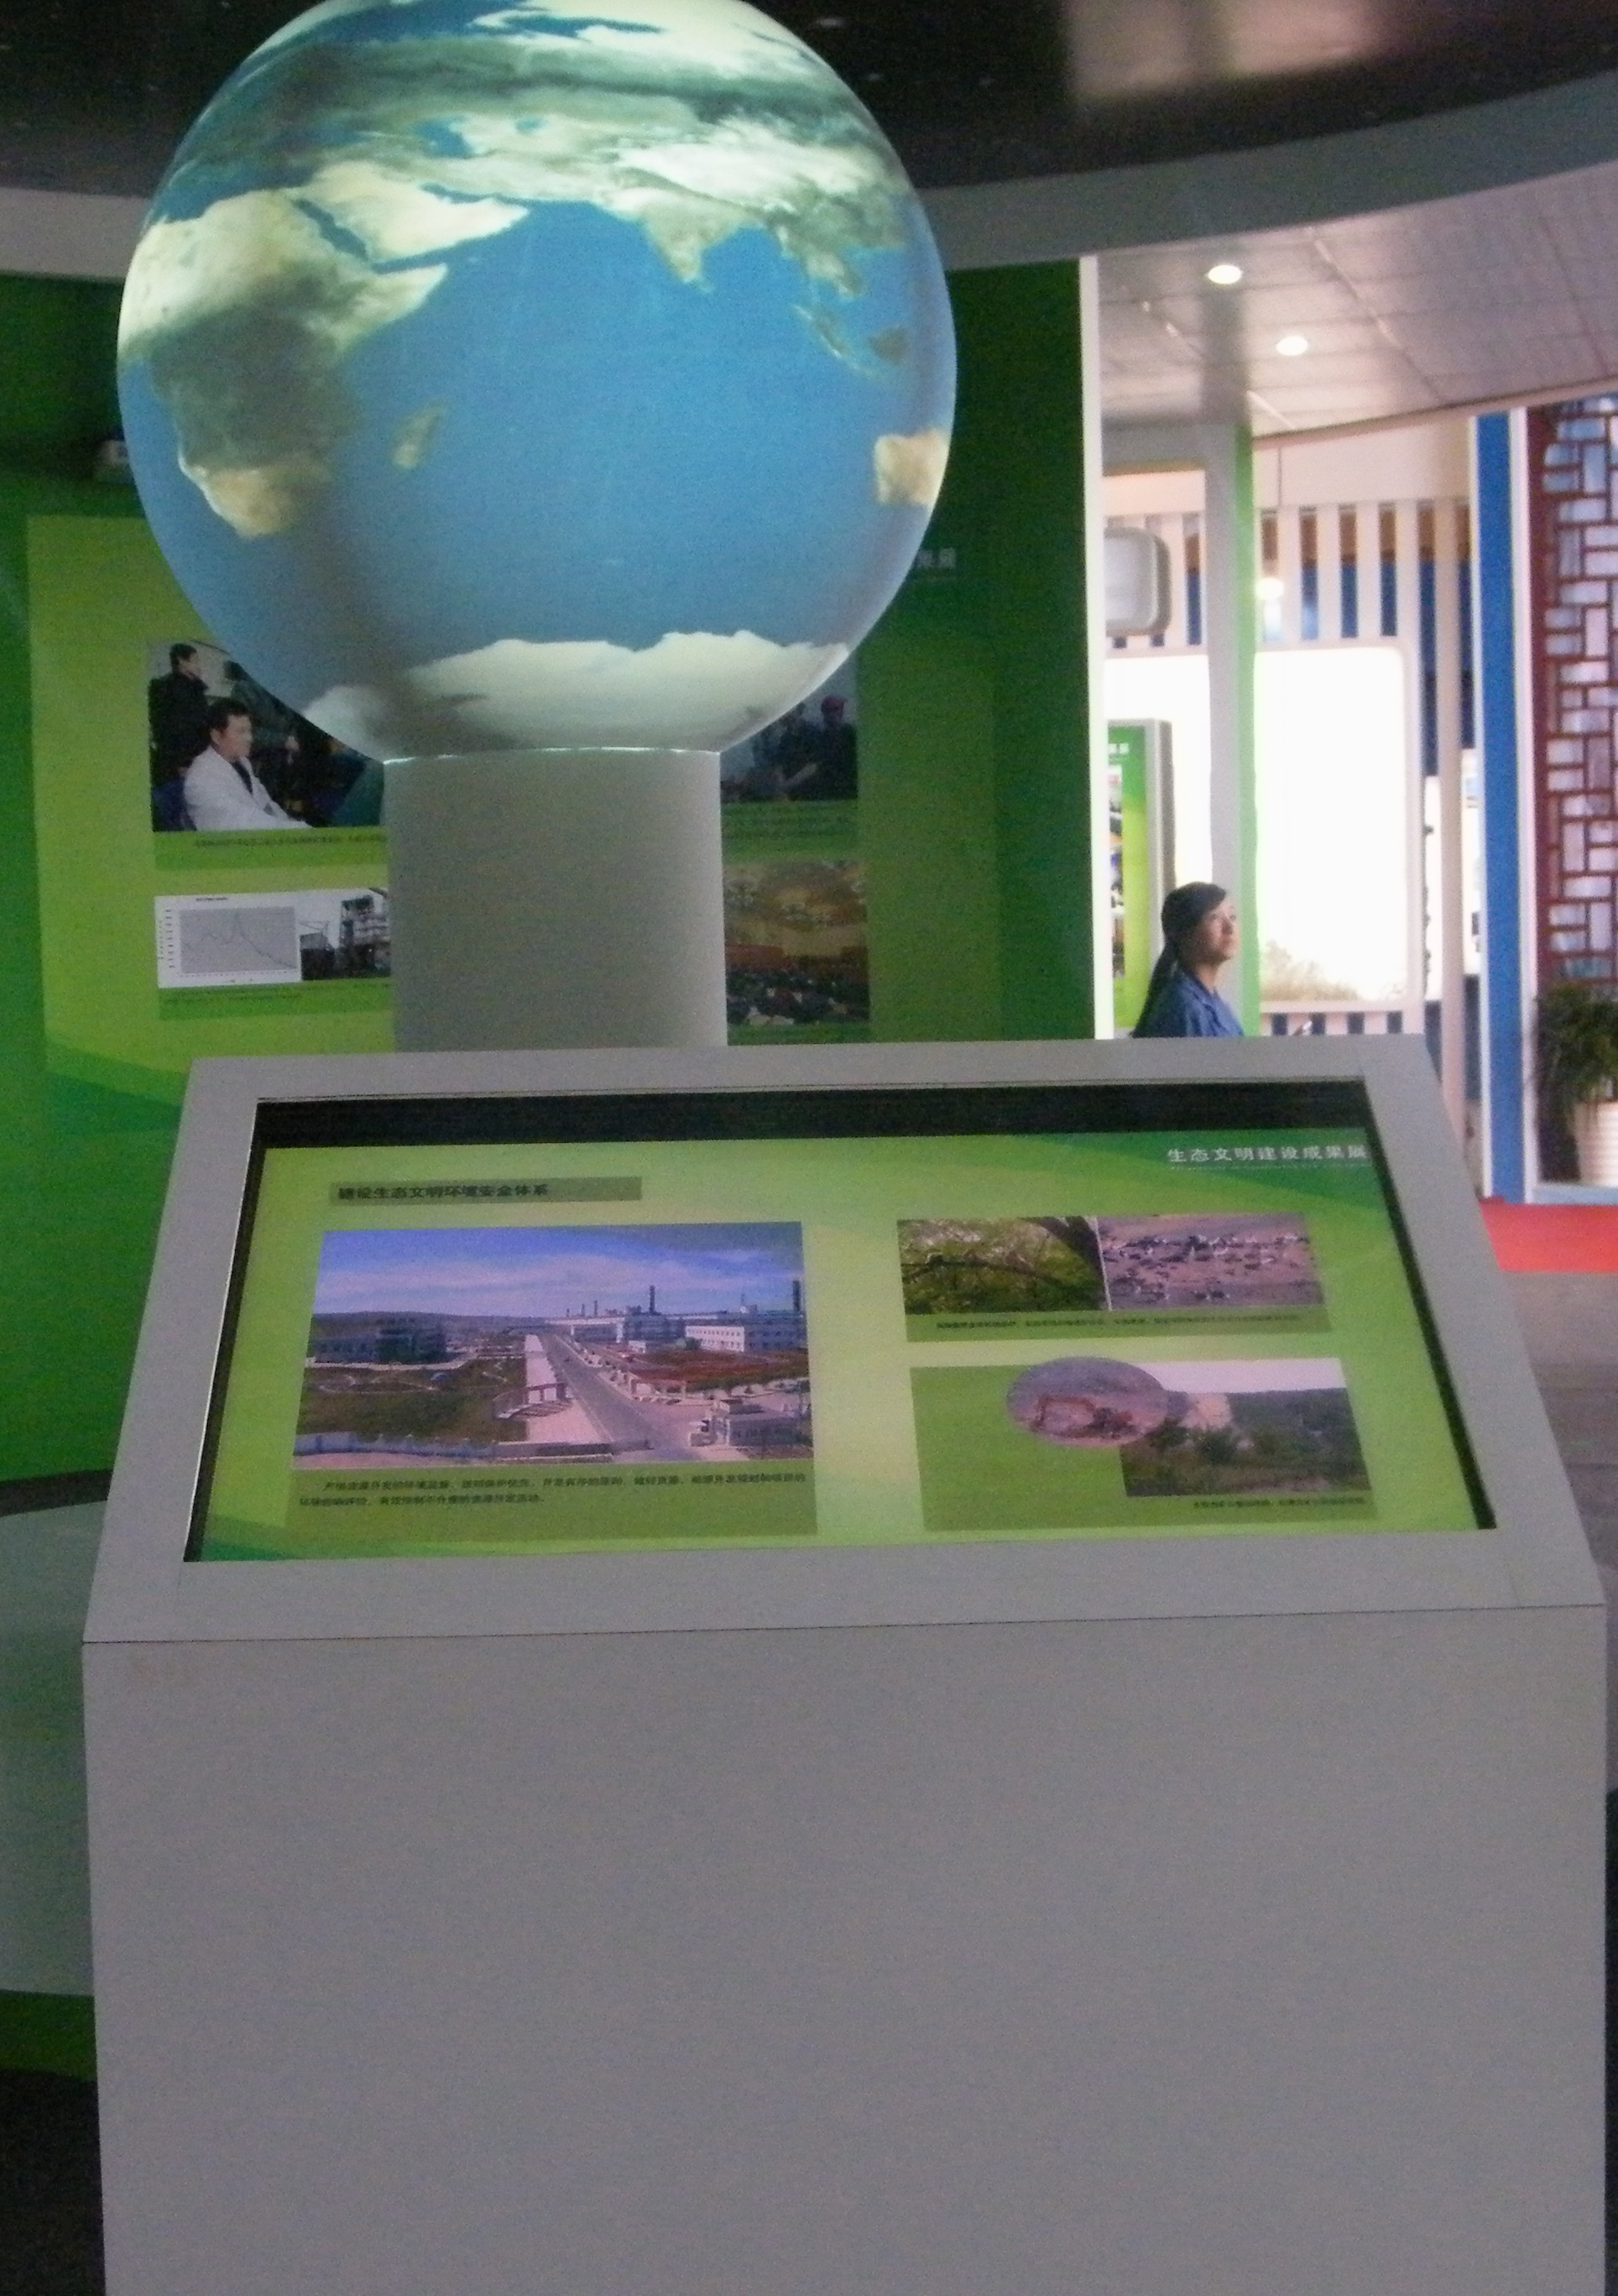 球幕展示系统、SOS科学球幕系统、内外球幕投影展示系统、激光球幕展示